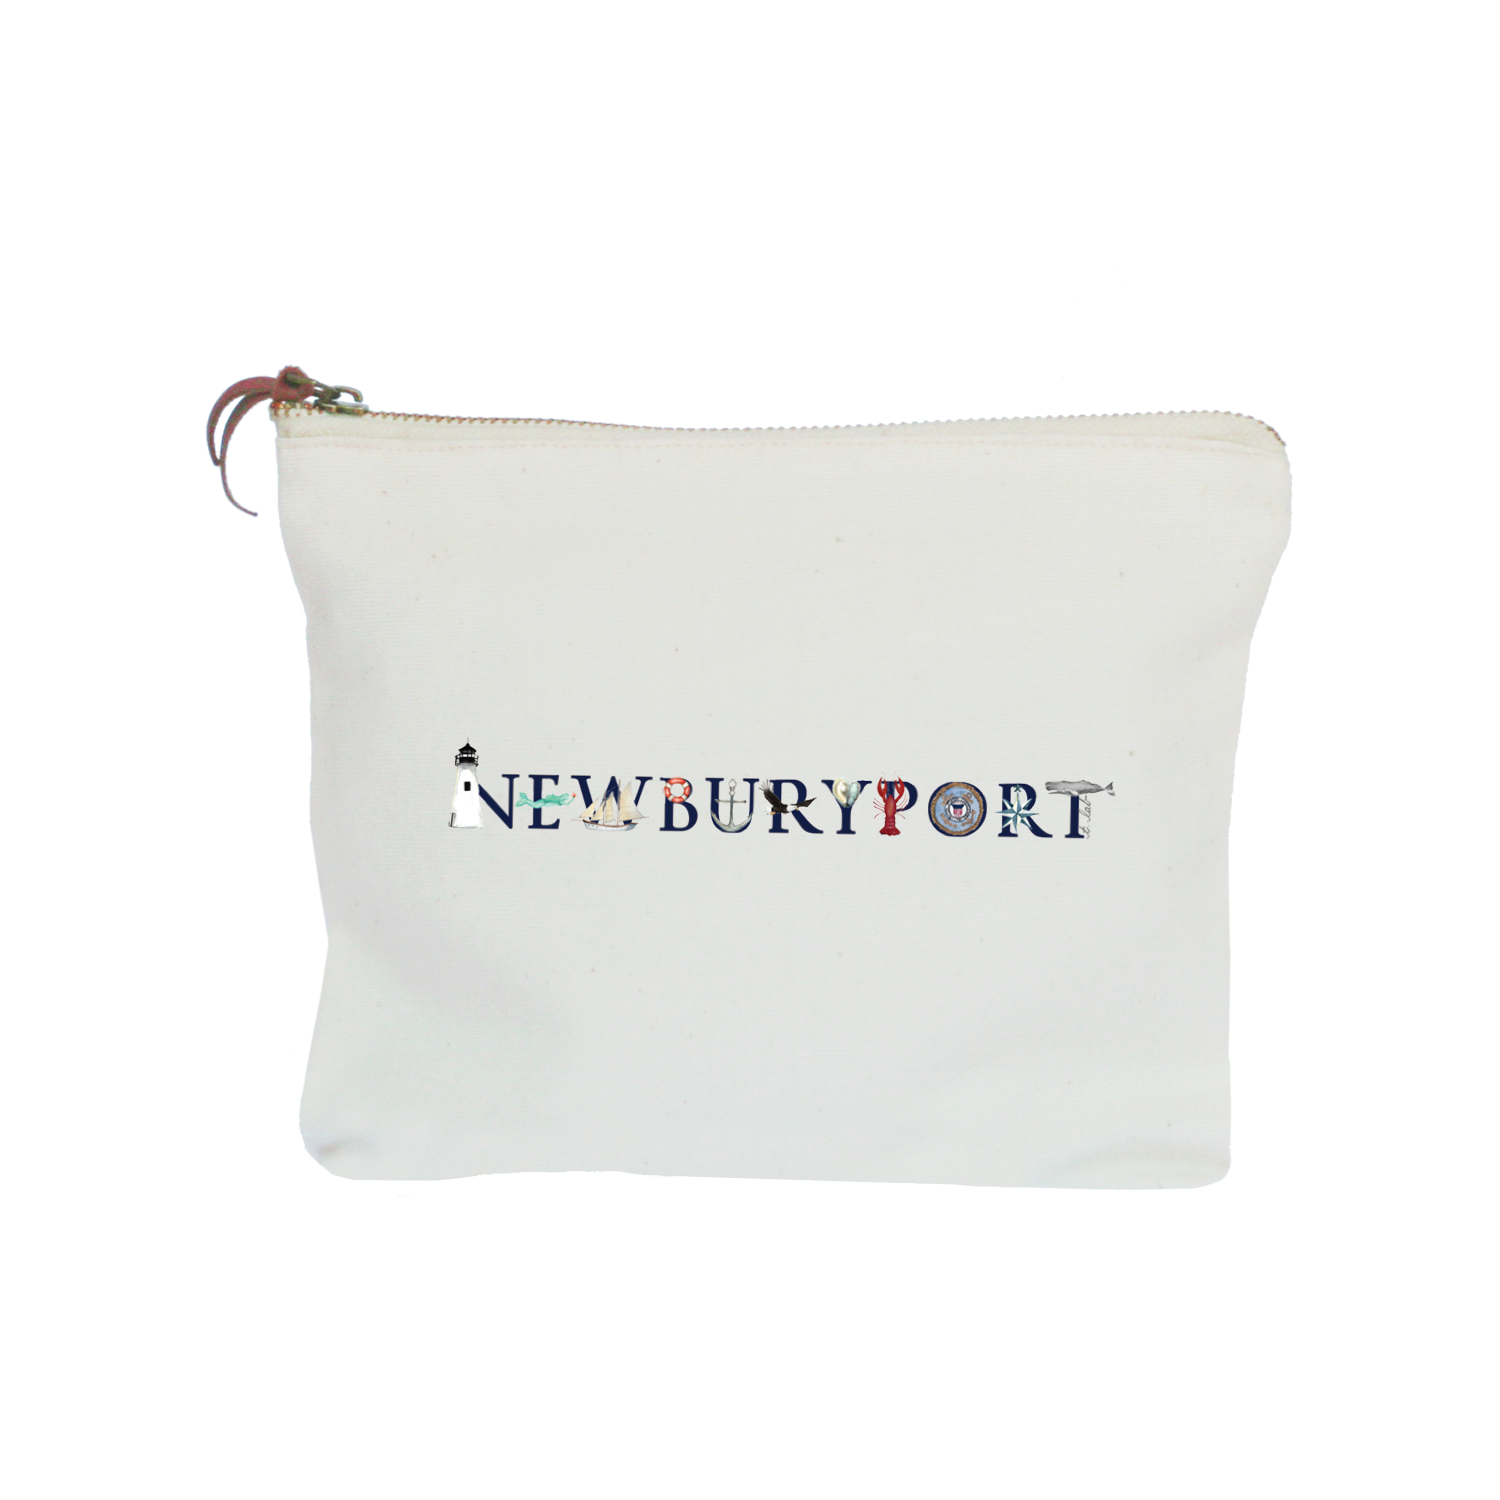 newburyport zipper pouch